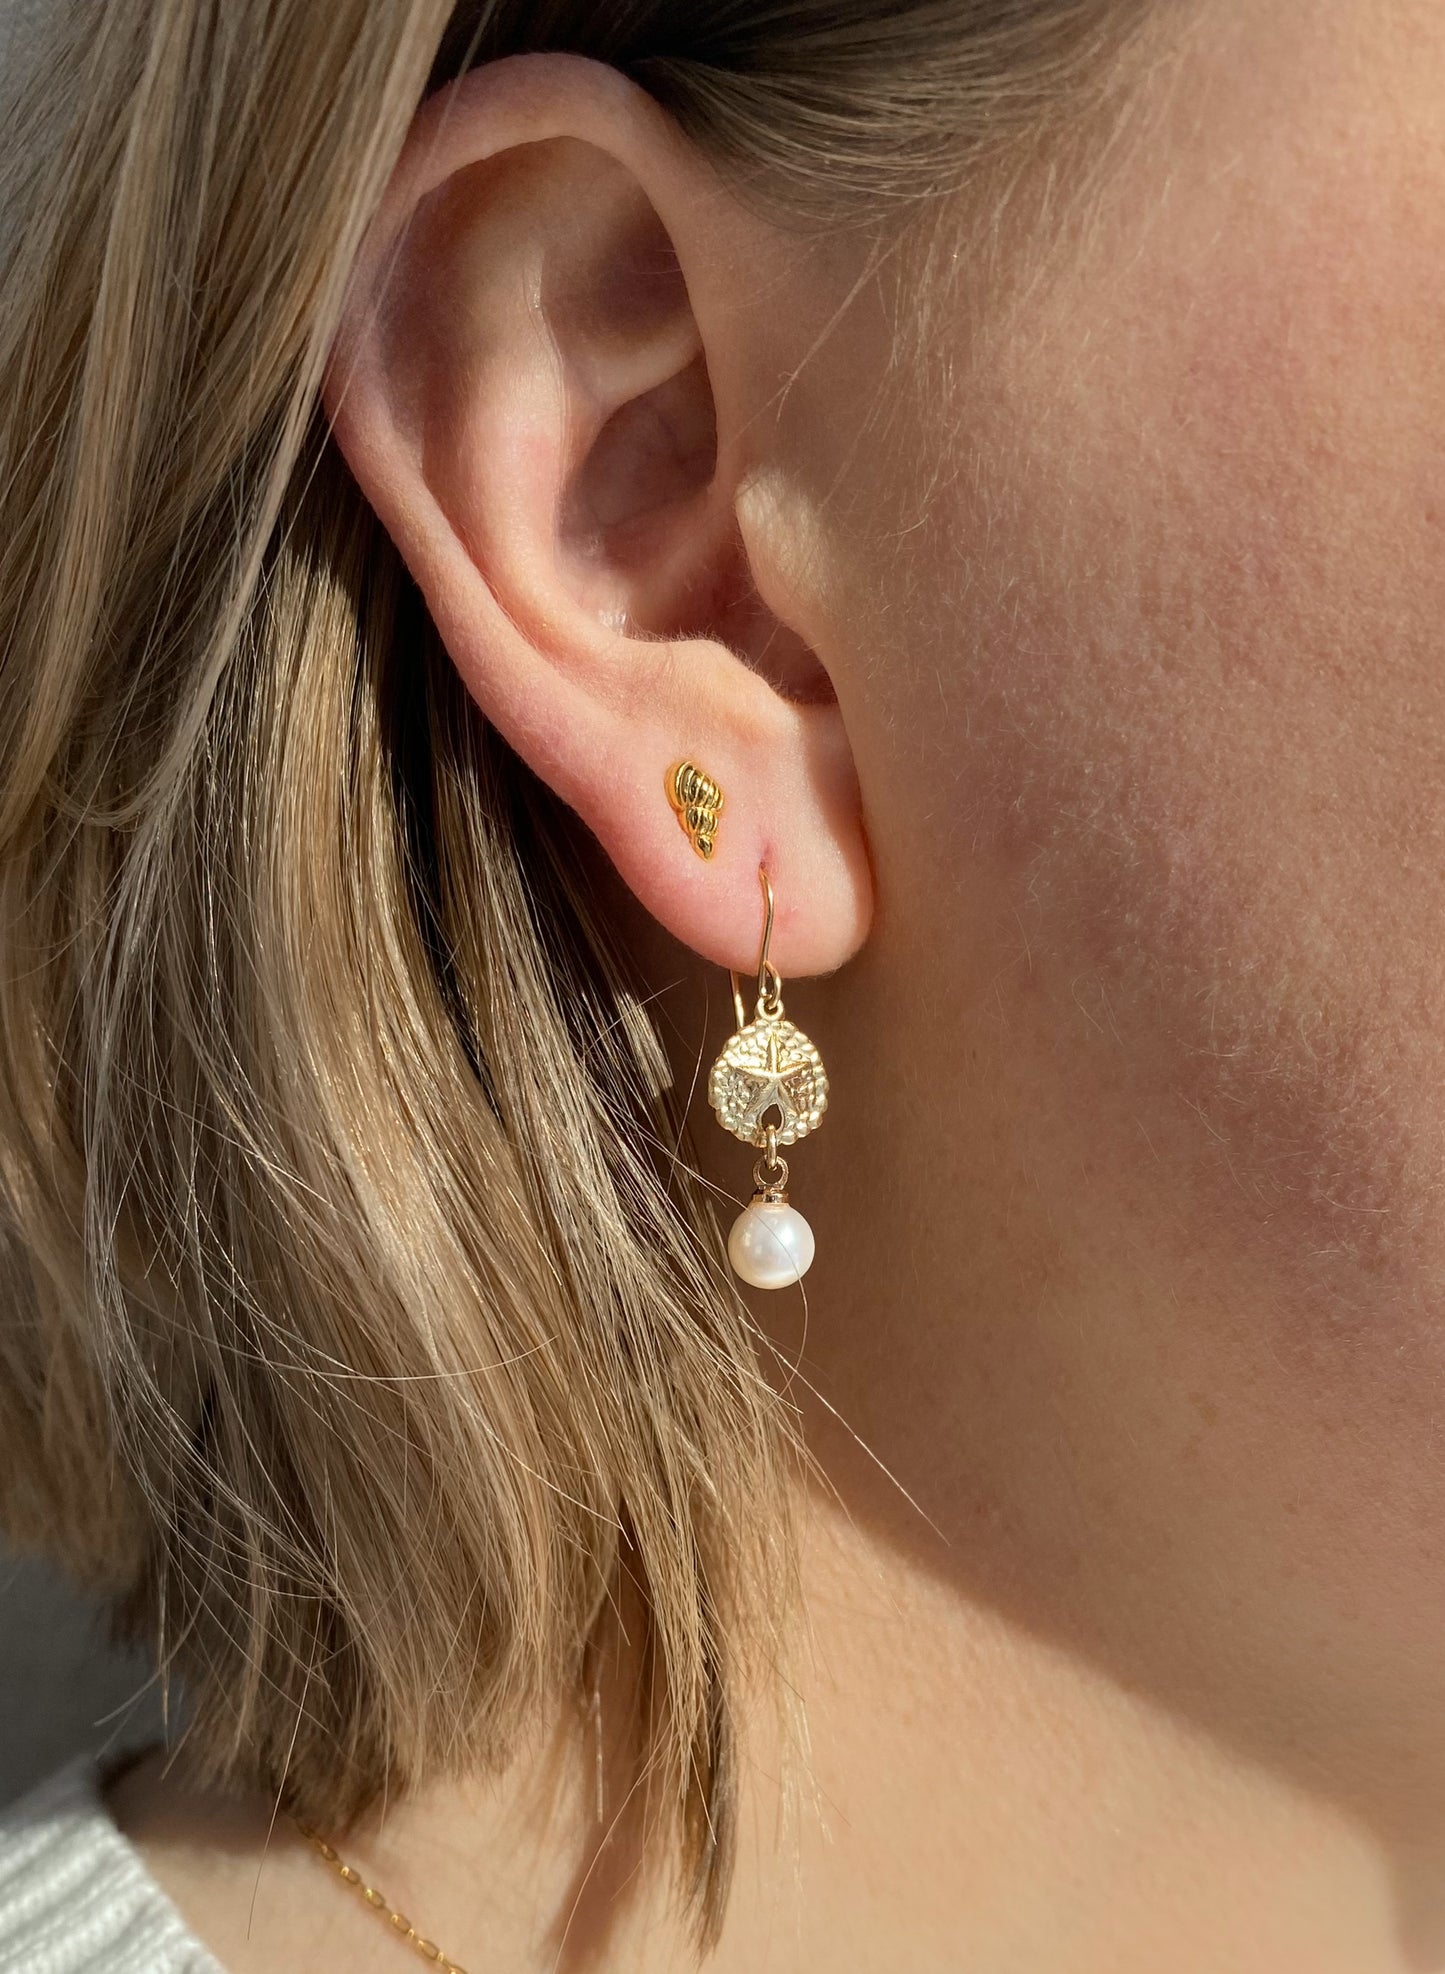 18k Gold Vermeil Minimalist Shell Stud Earrings ∙ Waterproof ∙ Tiny Spiral Shell Earrings ∙ Minimalist Silver Earrings ∙ Ocean Summer Beach